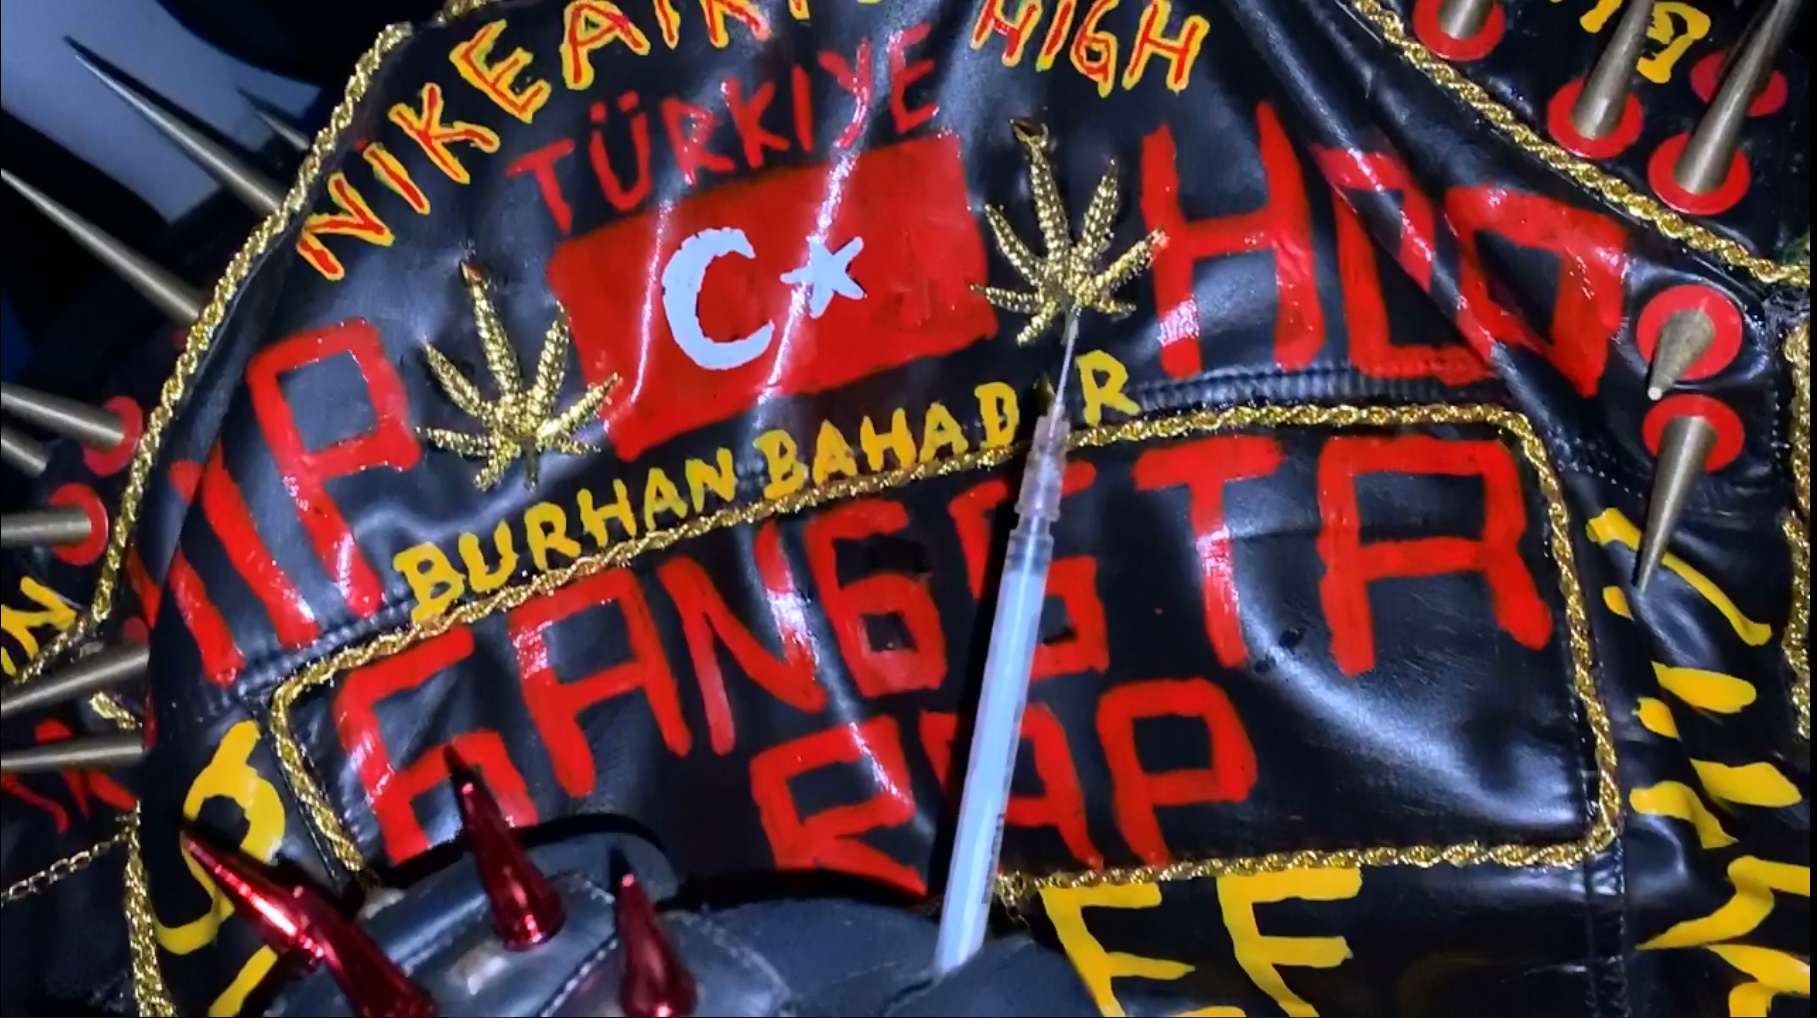 HipHop / GangstaRap leatherjacket